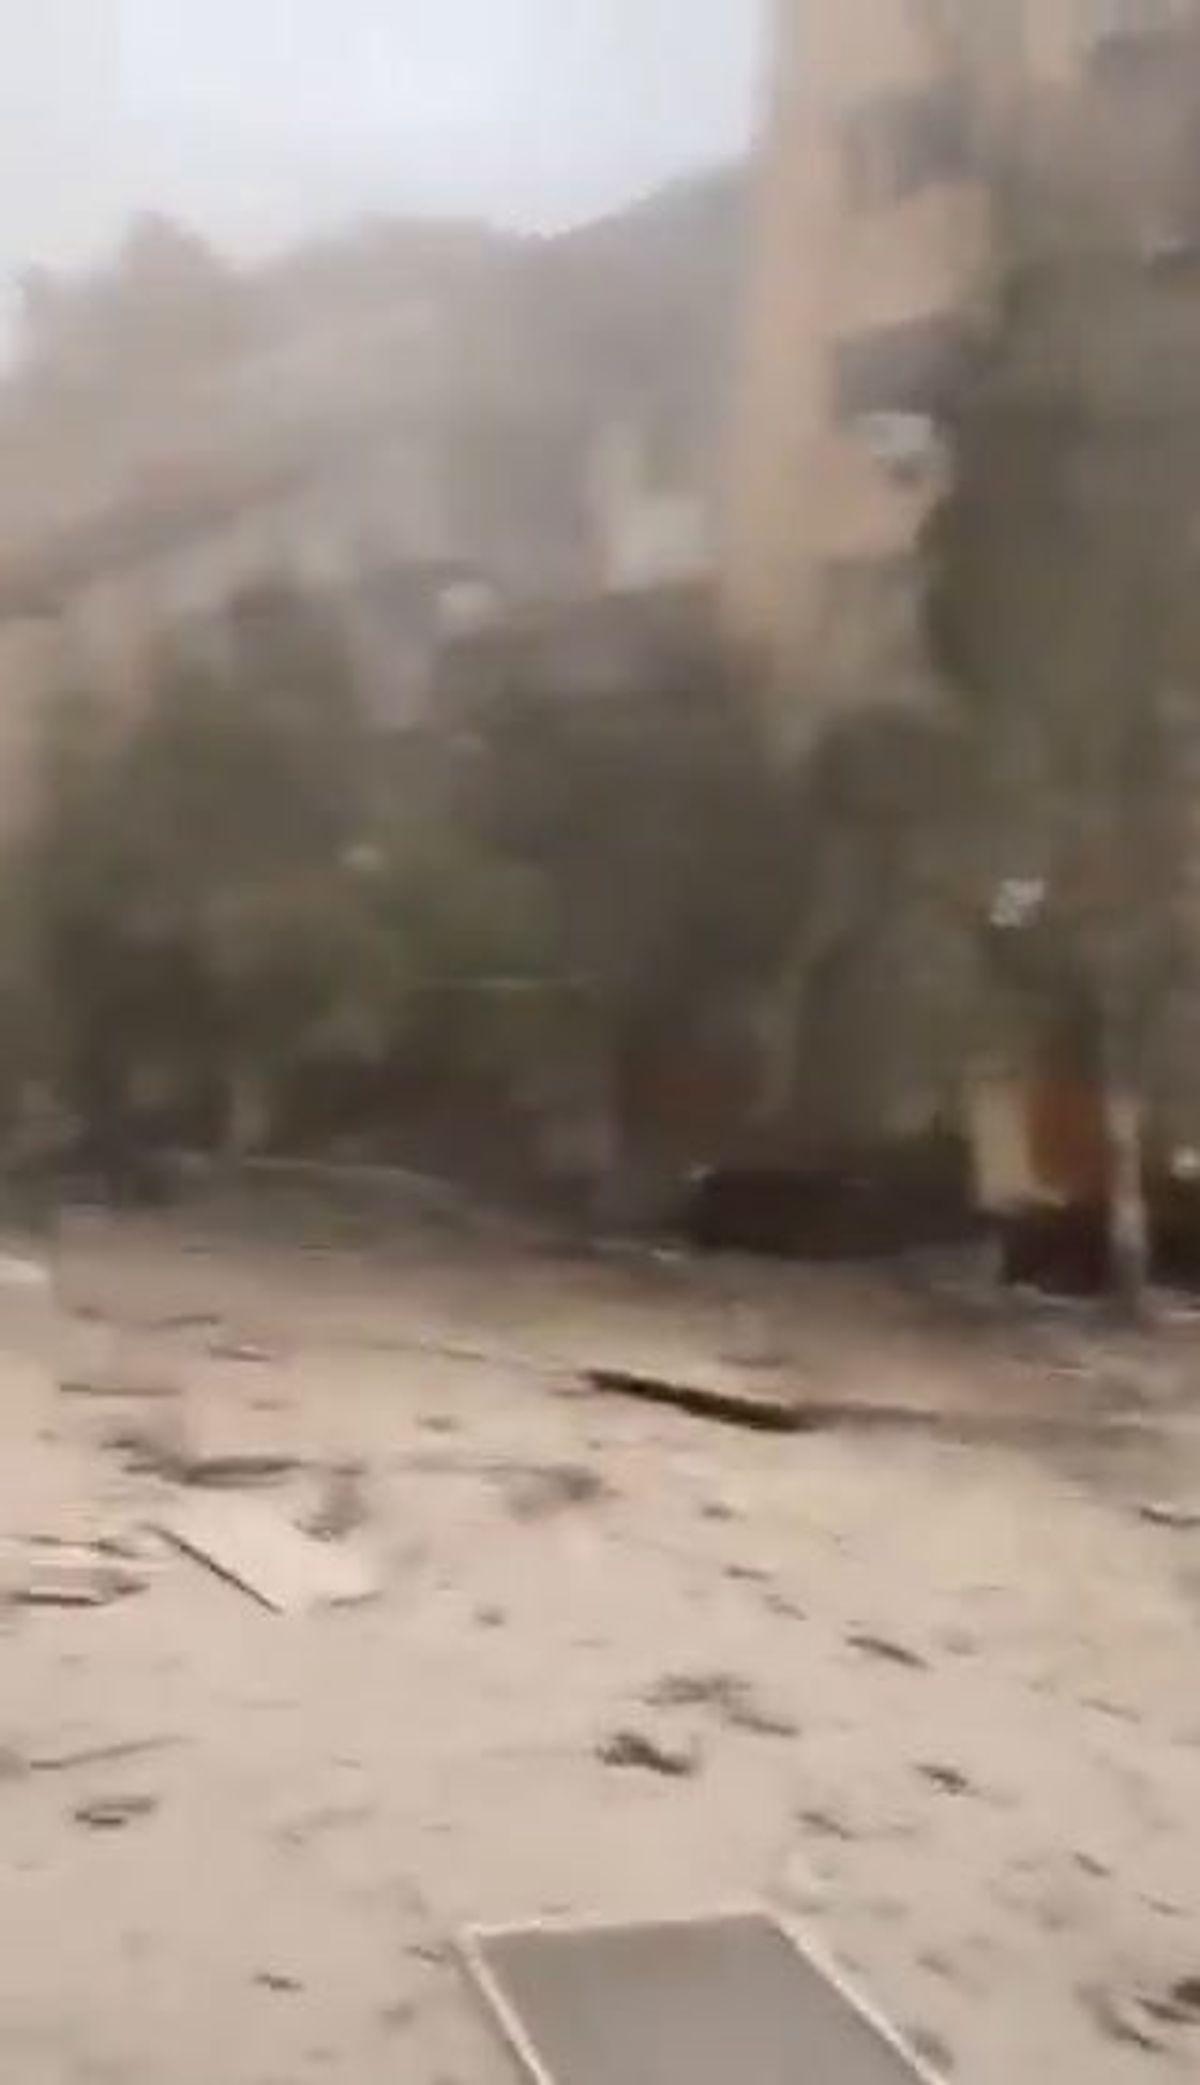 Guerra Ucraina, Mosca bombarda edificio residenziale: 8 morti e 27 feriti | video